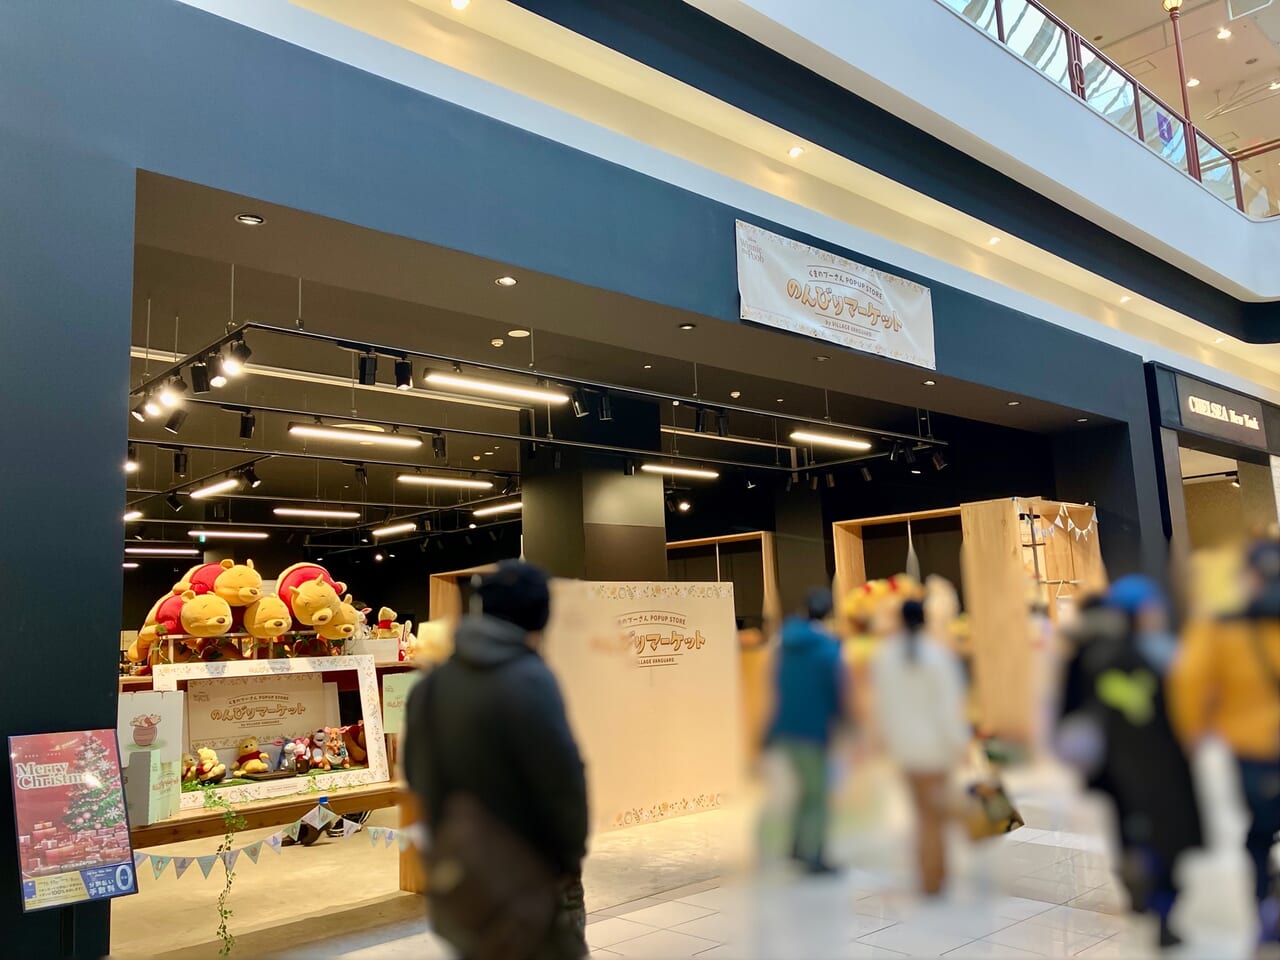 イオンモール札幌苗穂にて、くまのプーさんポップアップストア「のんびりマーケット」が開催中ですよ